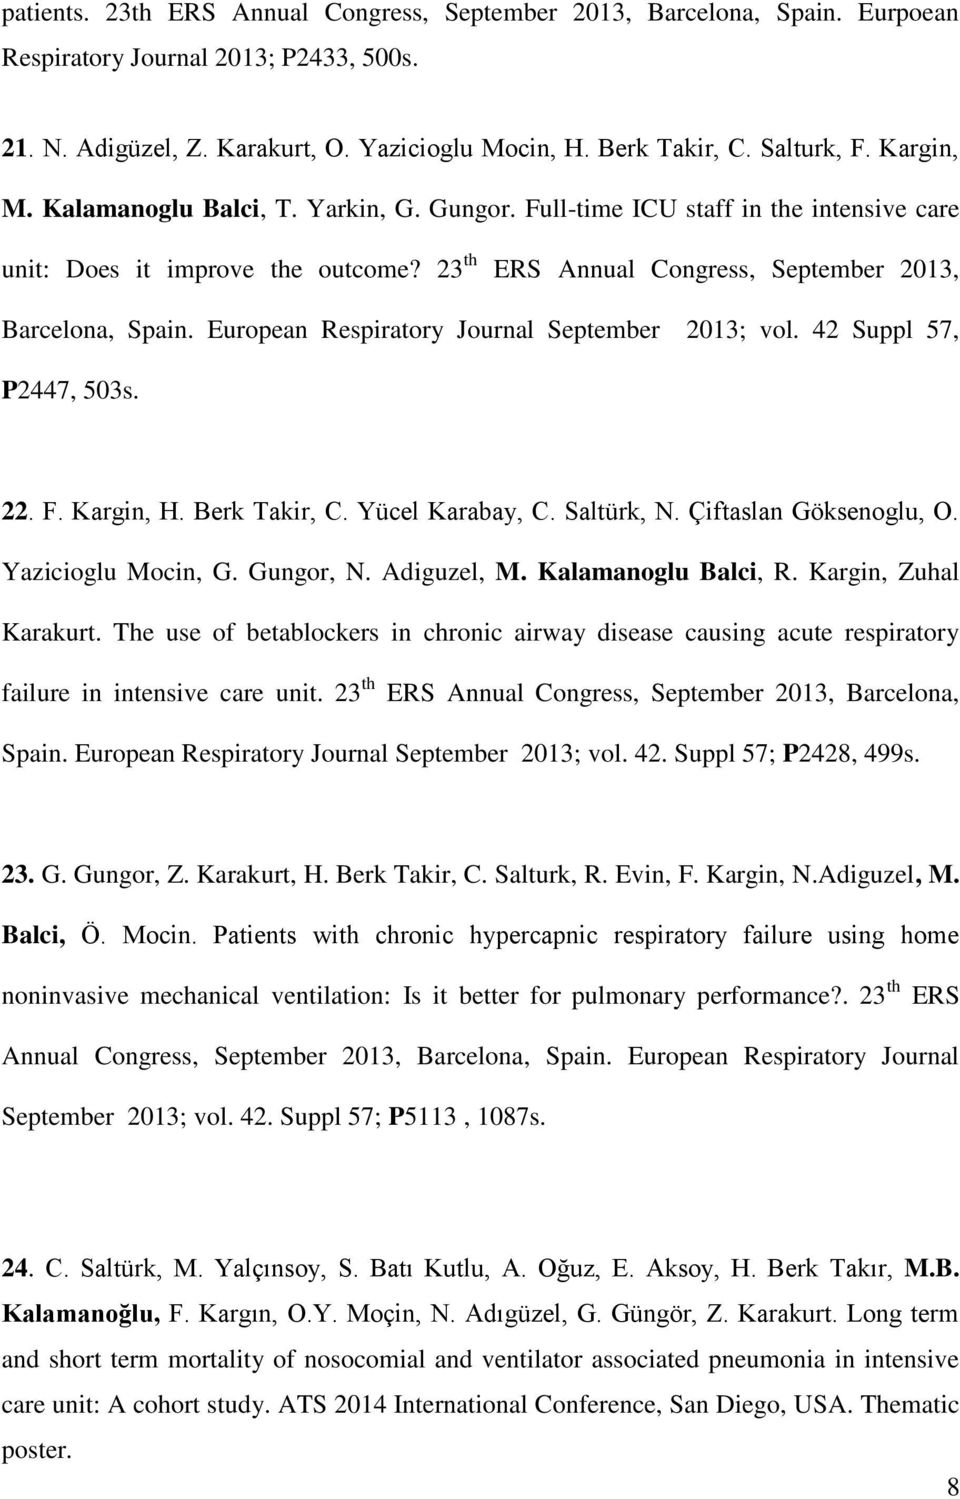 European Respiratory Journal September 2013; vol. 42 Suppl 57, P2447, 503s. 22. F. Kargin, H. Berk Takir, C. Yücel Karabay, C. Saltürk, N. Çiftaslan Göksenoglu, O. Yazicioglu Mocin, G. Gungor, N.